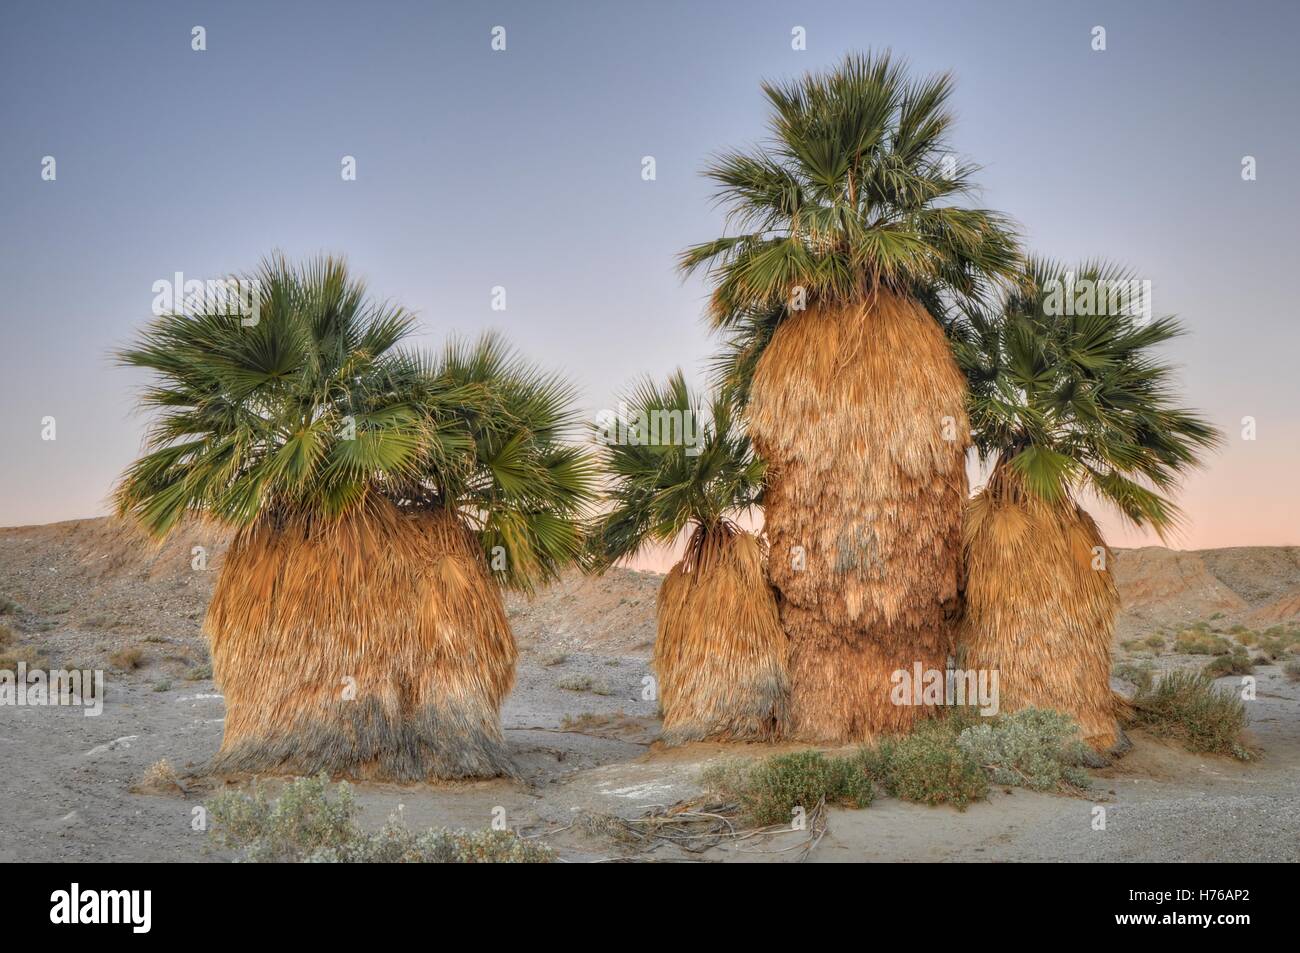 Palmiers, parc national du désert d'Anza Borrego, Californie, États-Unis Banque D'Images